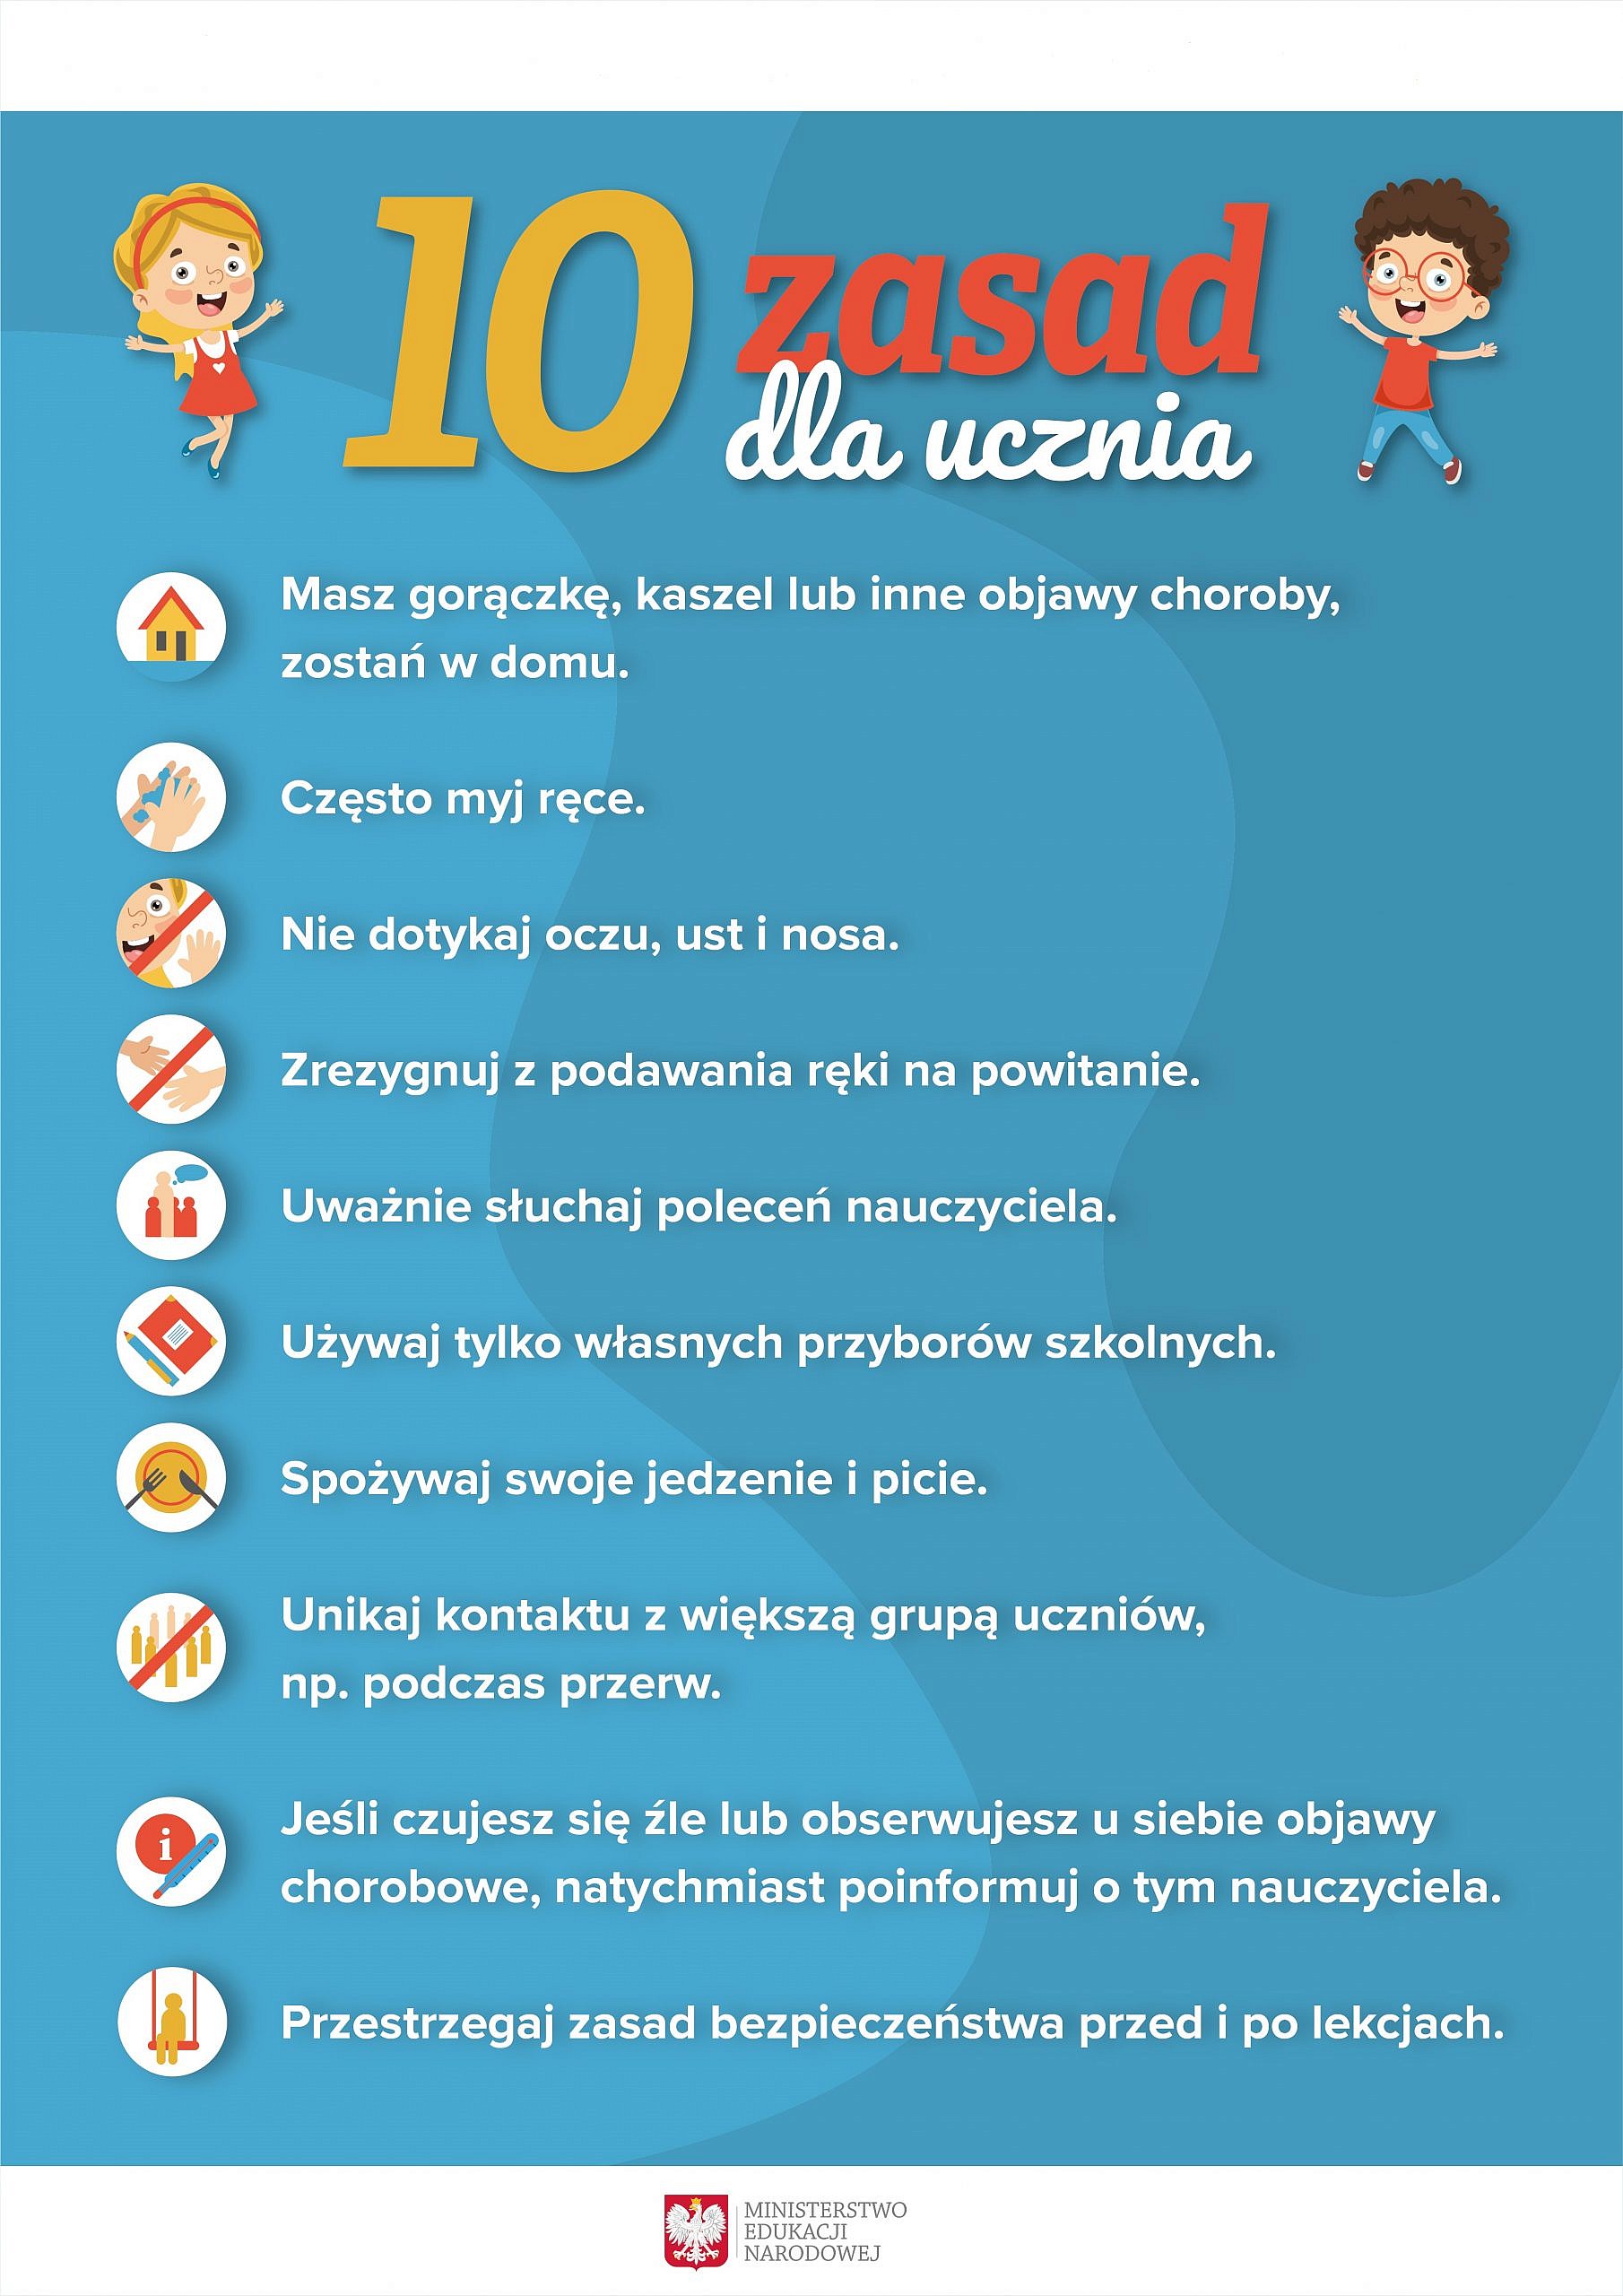 10 zasad dla dzieci w związku z bezpiecznym powrotem do szkół